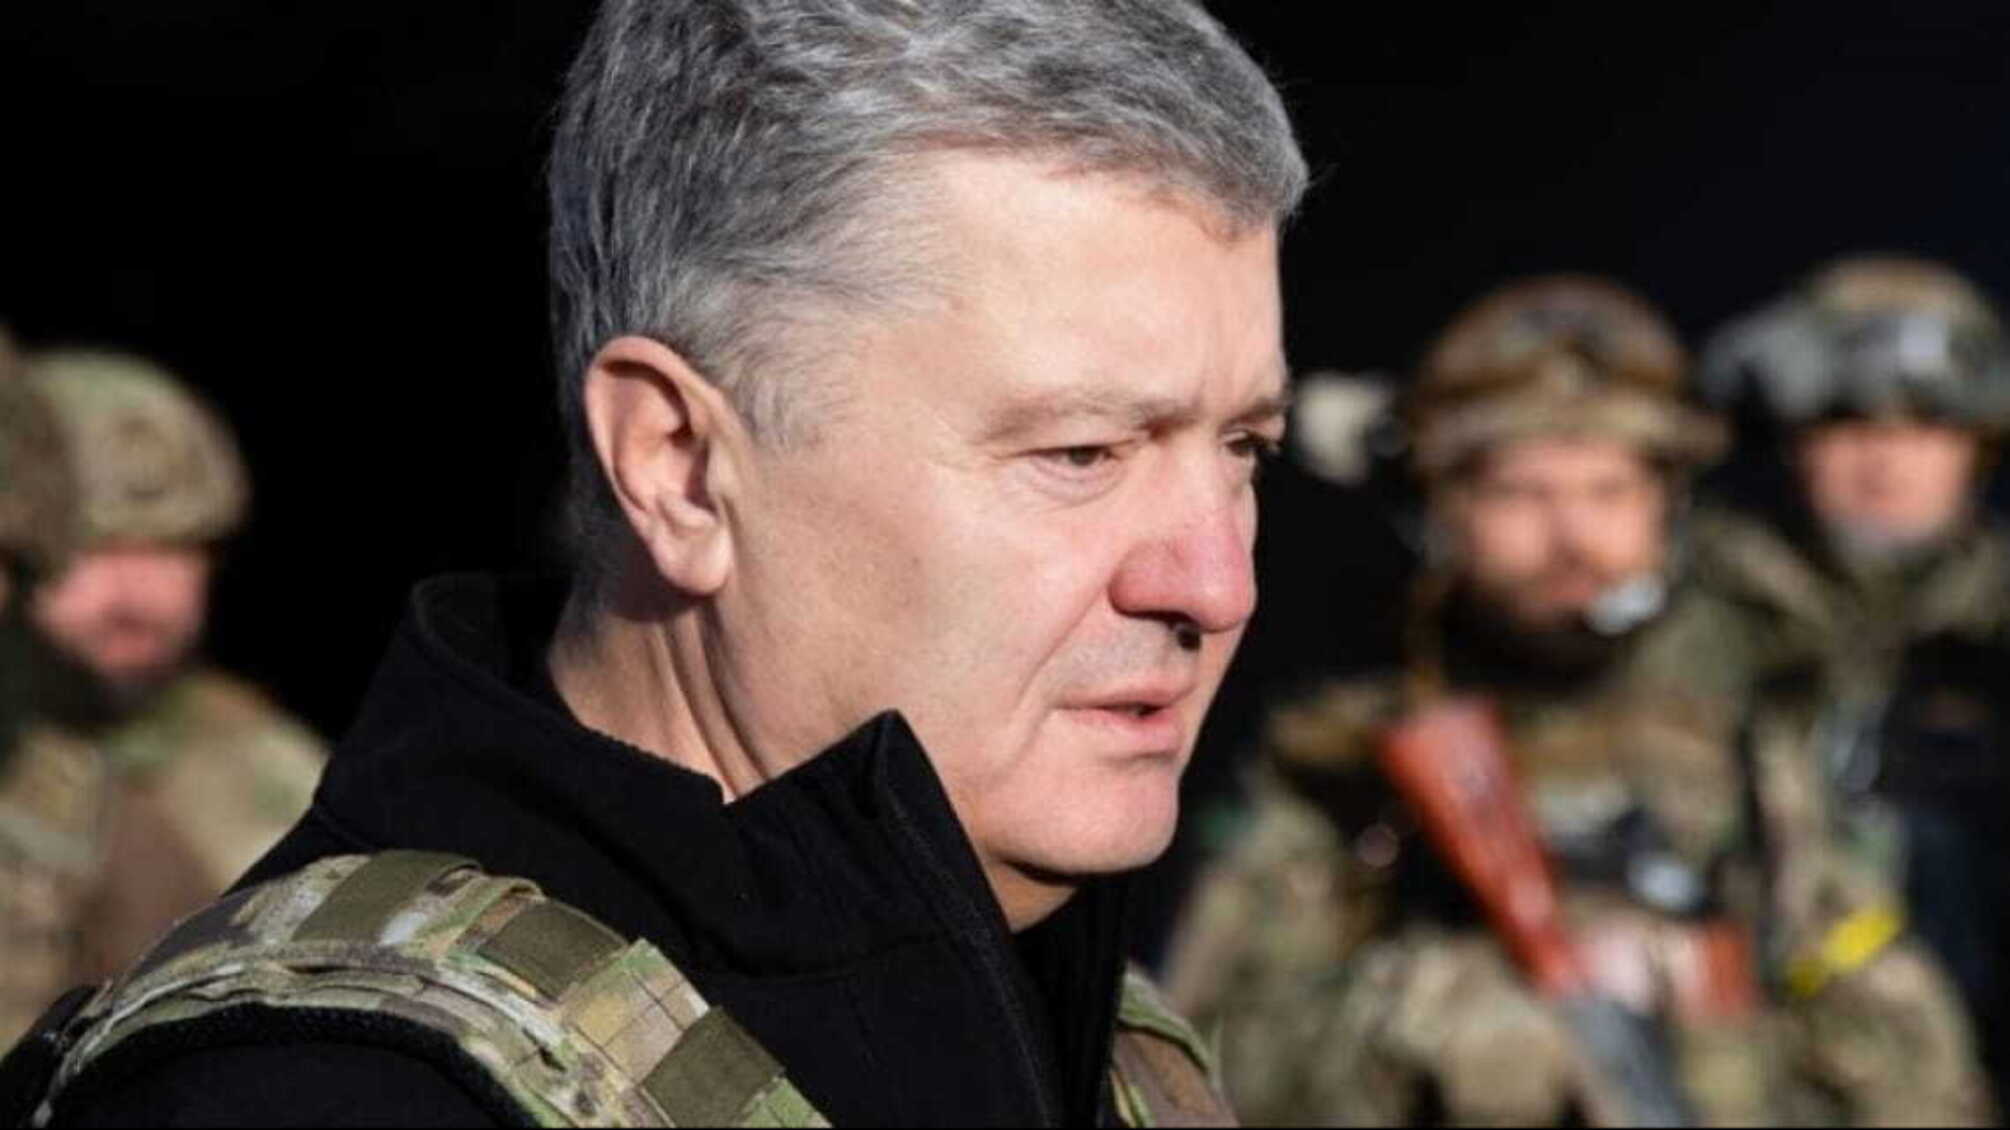 пятый президент Украины Петр Порошенко